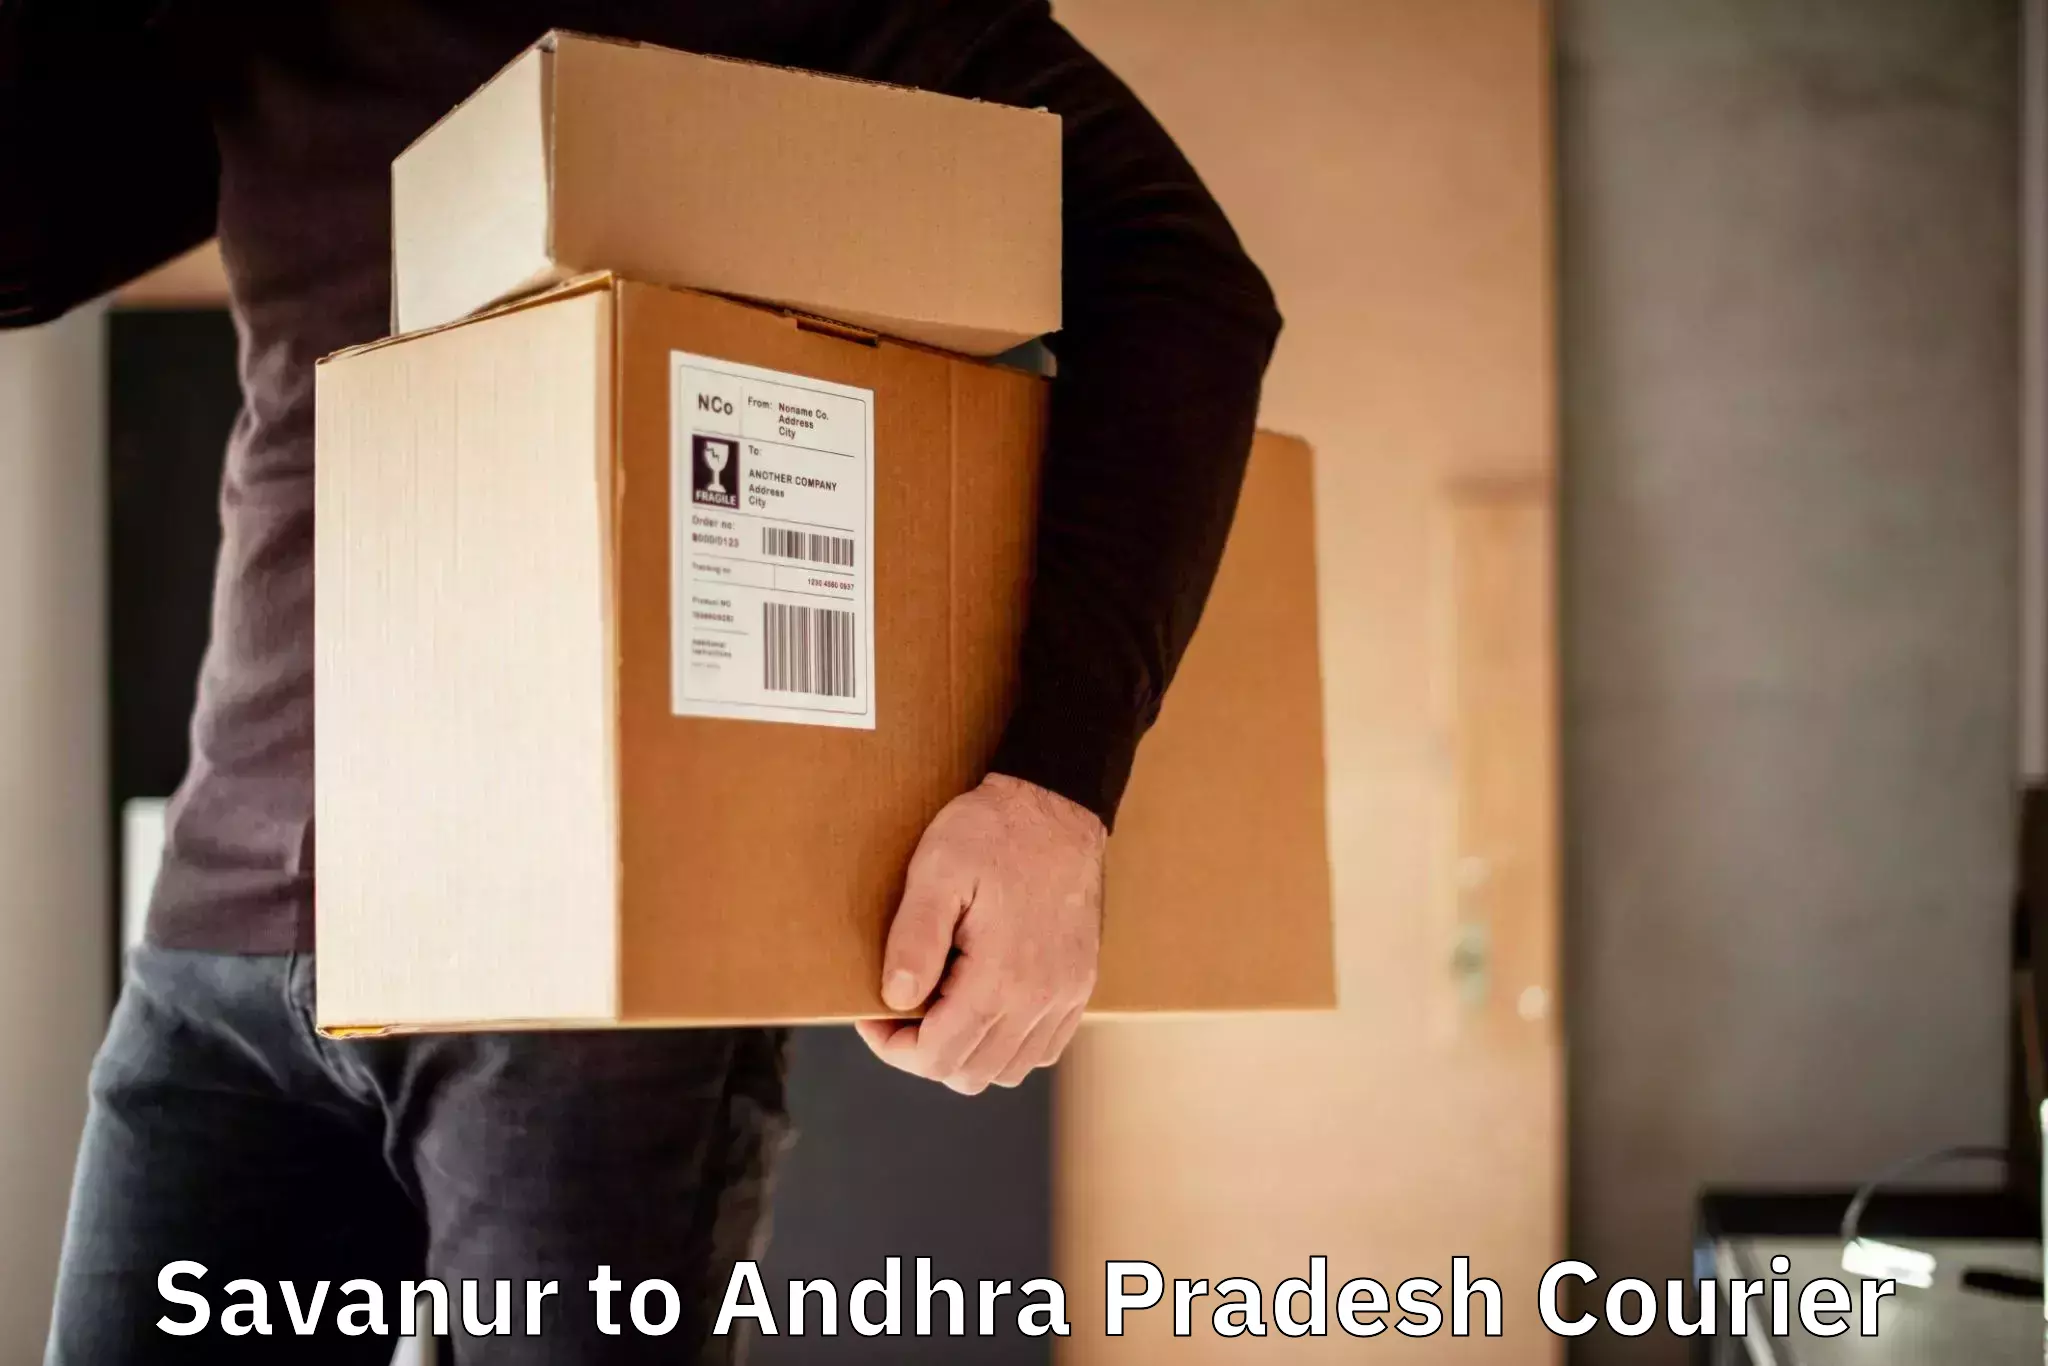 Urgent courier needs Savanur to Challapalli